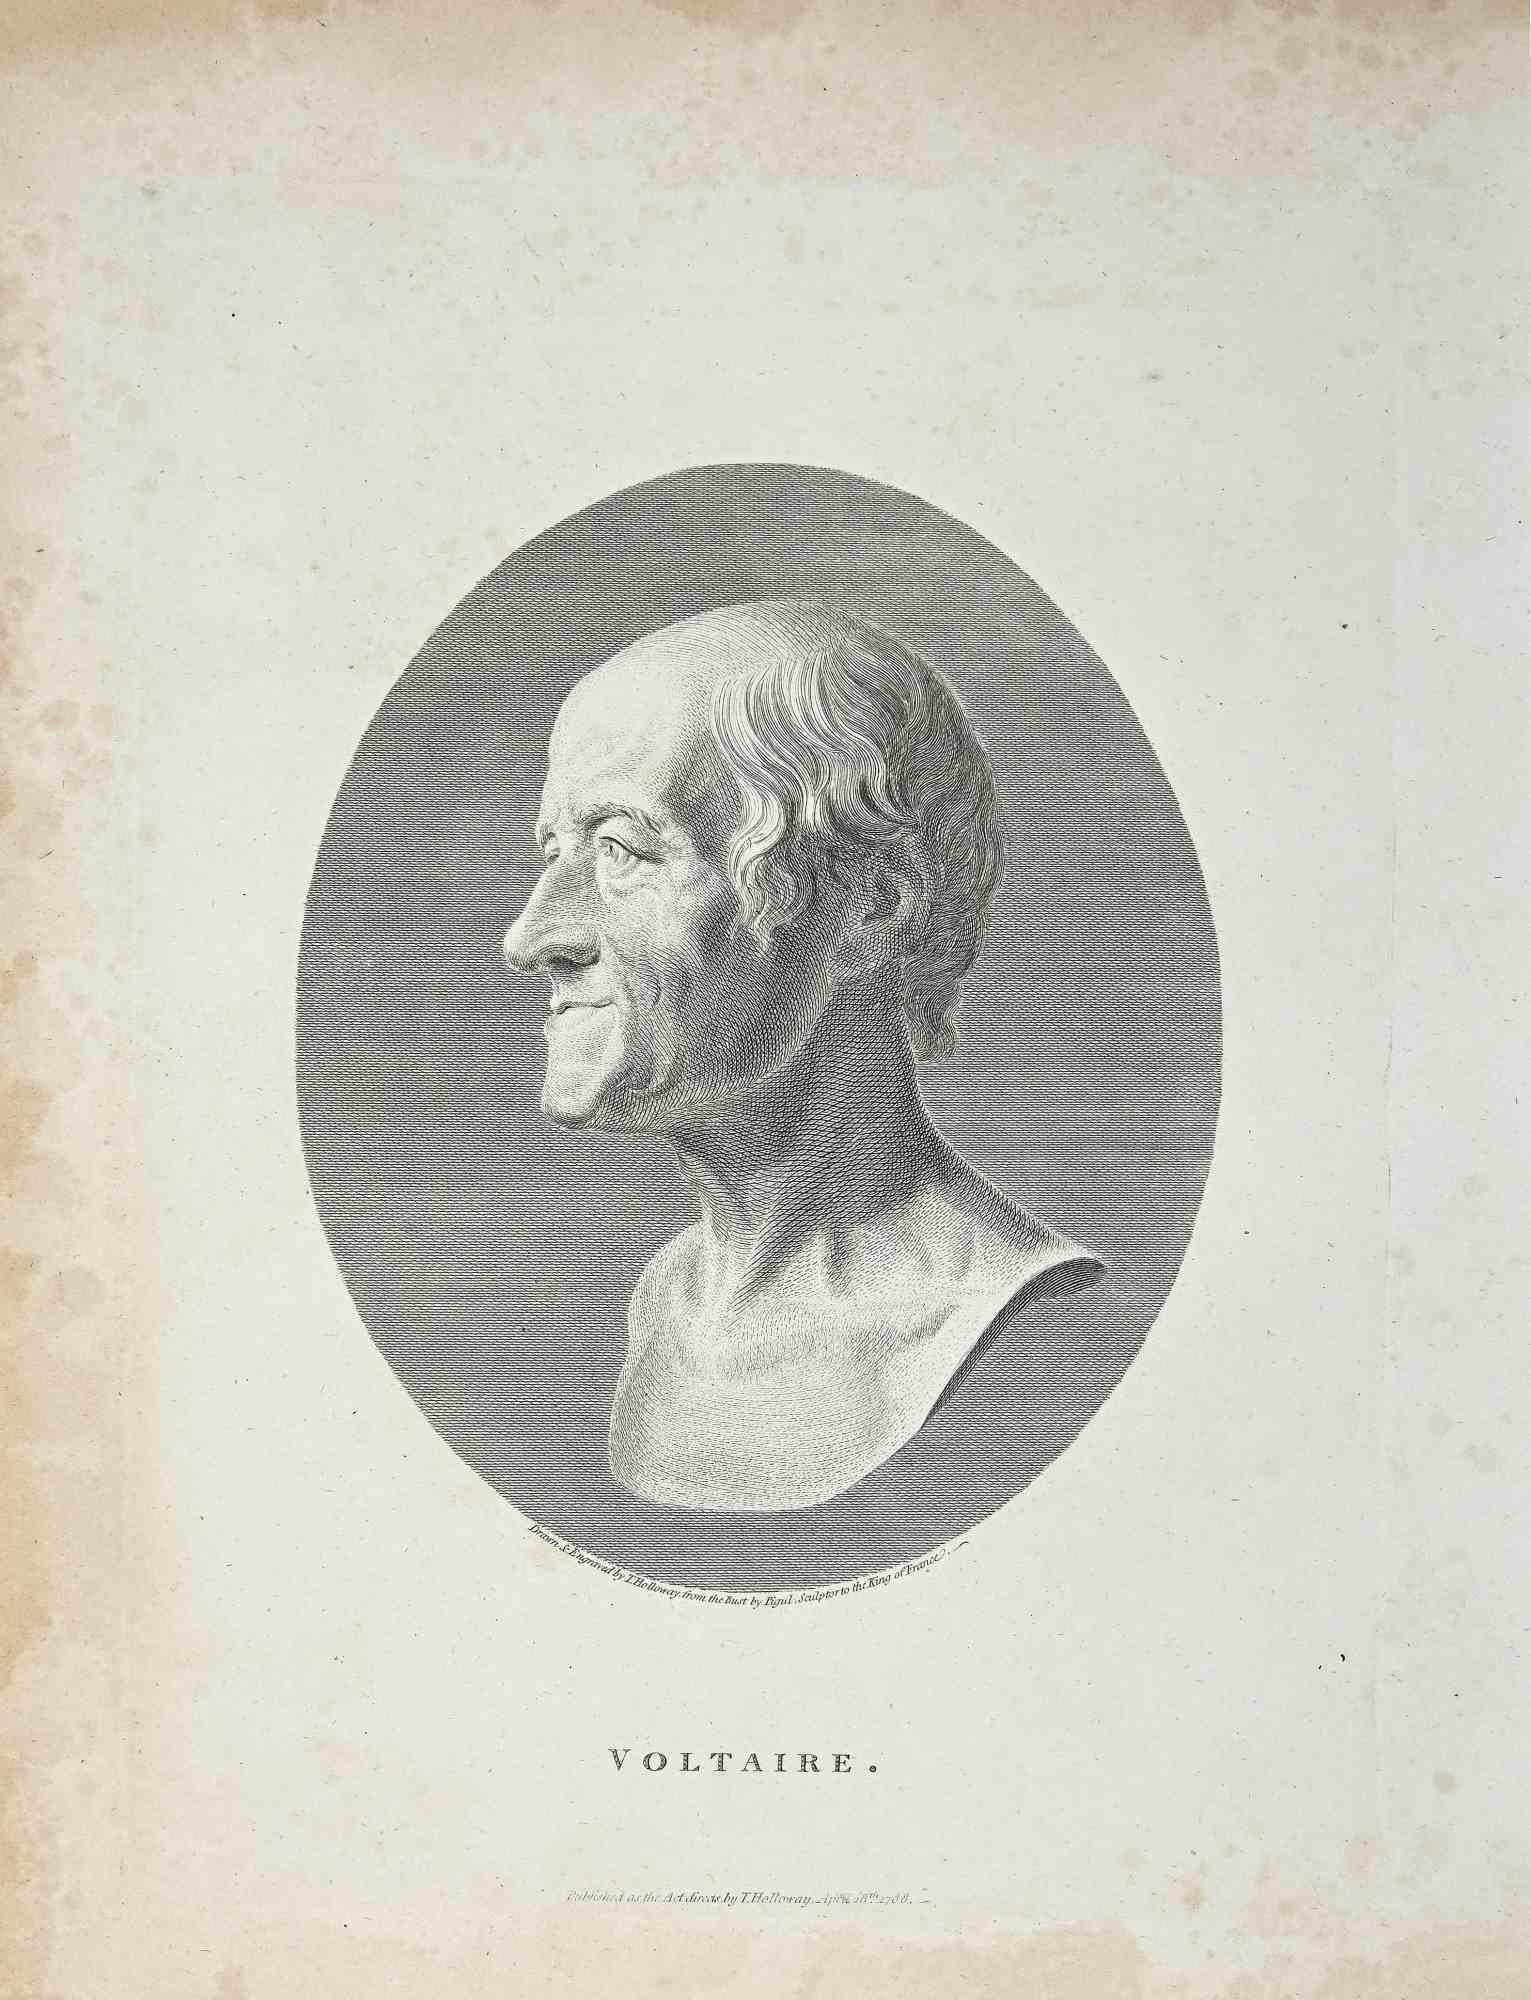 Porträt von Voltaire  ist ein Original-Kunstwerk von Thomas Holloway (1748 - 1827).

Original-Radierung von J.C. Lavater's "Essays on Physiognomy, Designed to promote the Knowledge and the Love of Mankind", London, Bensley, 1810. 

Unten in der